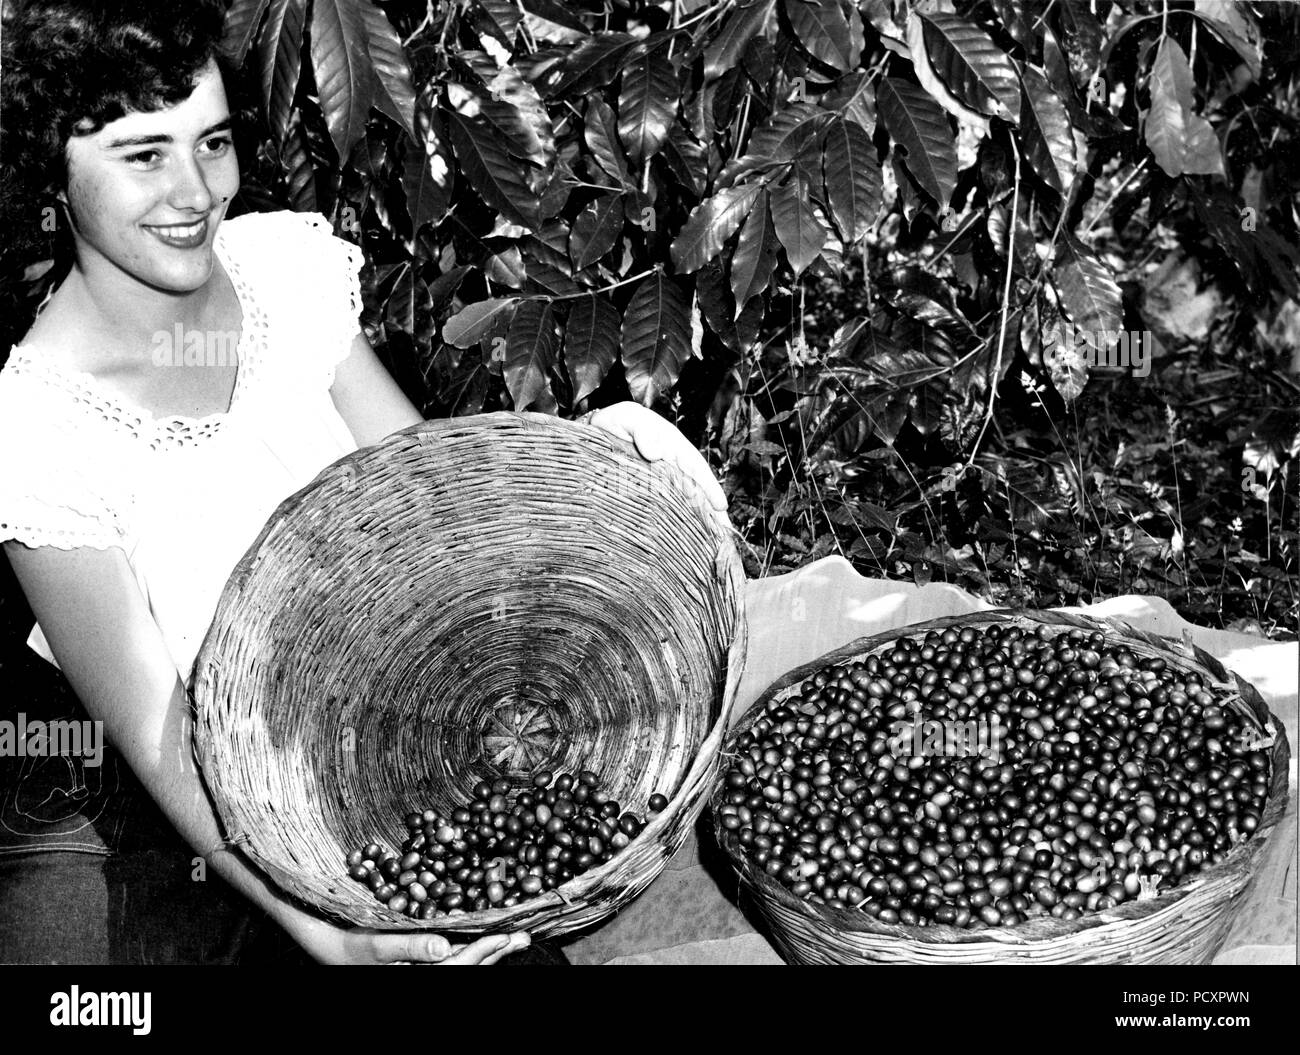 Kaffee Ernte. Die kommissionierer wählen Sie die reife rote Kirschen verlassen die grüne, unreife Frucht am Baum für die spätere Ernte. Guatemala. 1949 Stockfoto